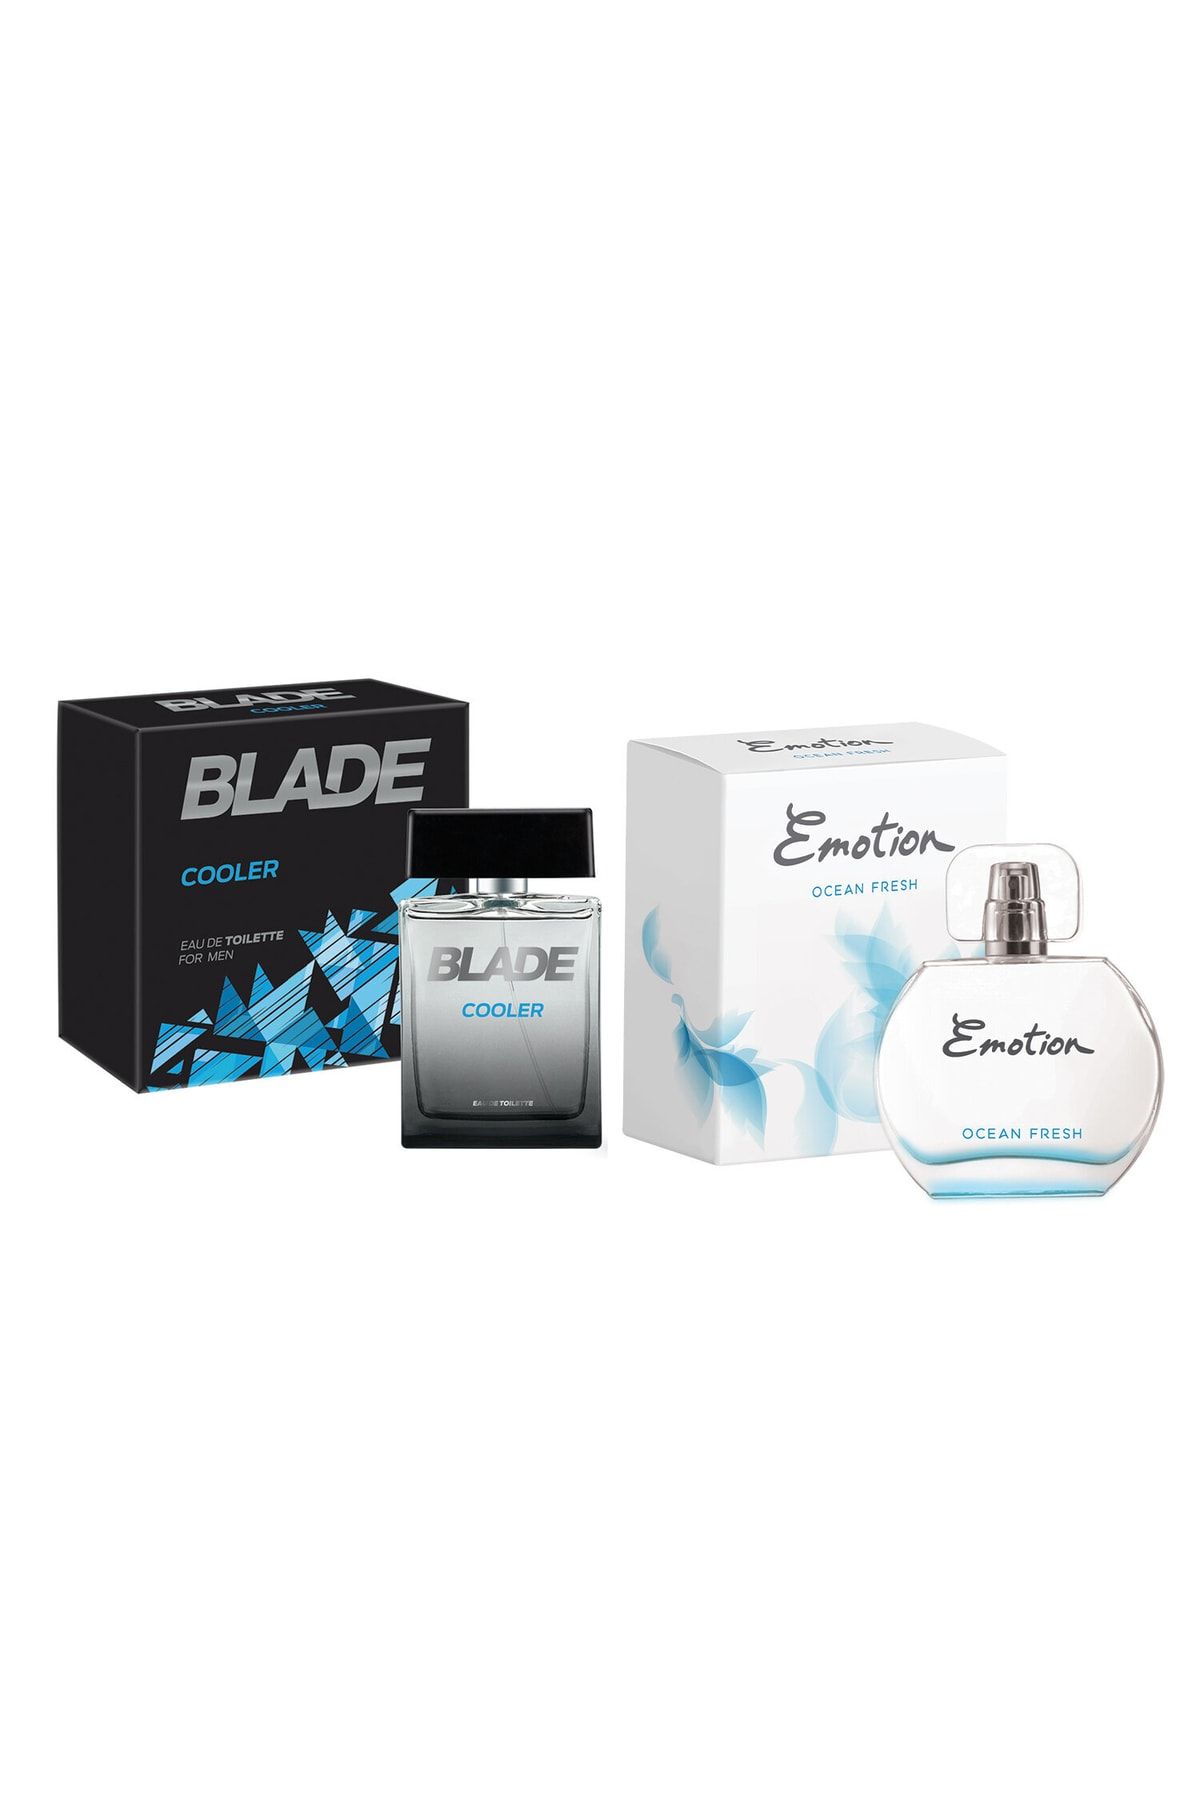 Blade Cooler Edt Parfüm 100ml+ Emotion Ocean Fresh Edt 50ml